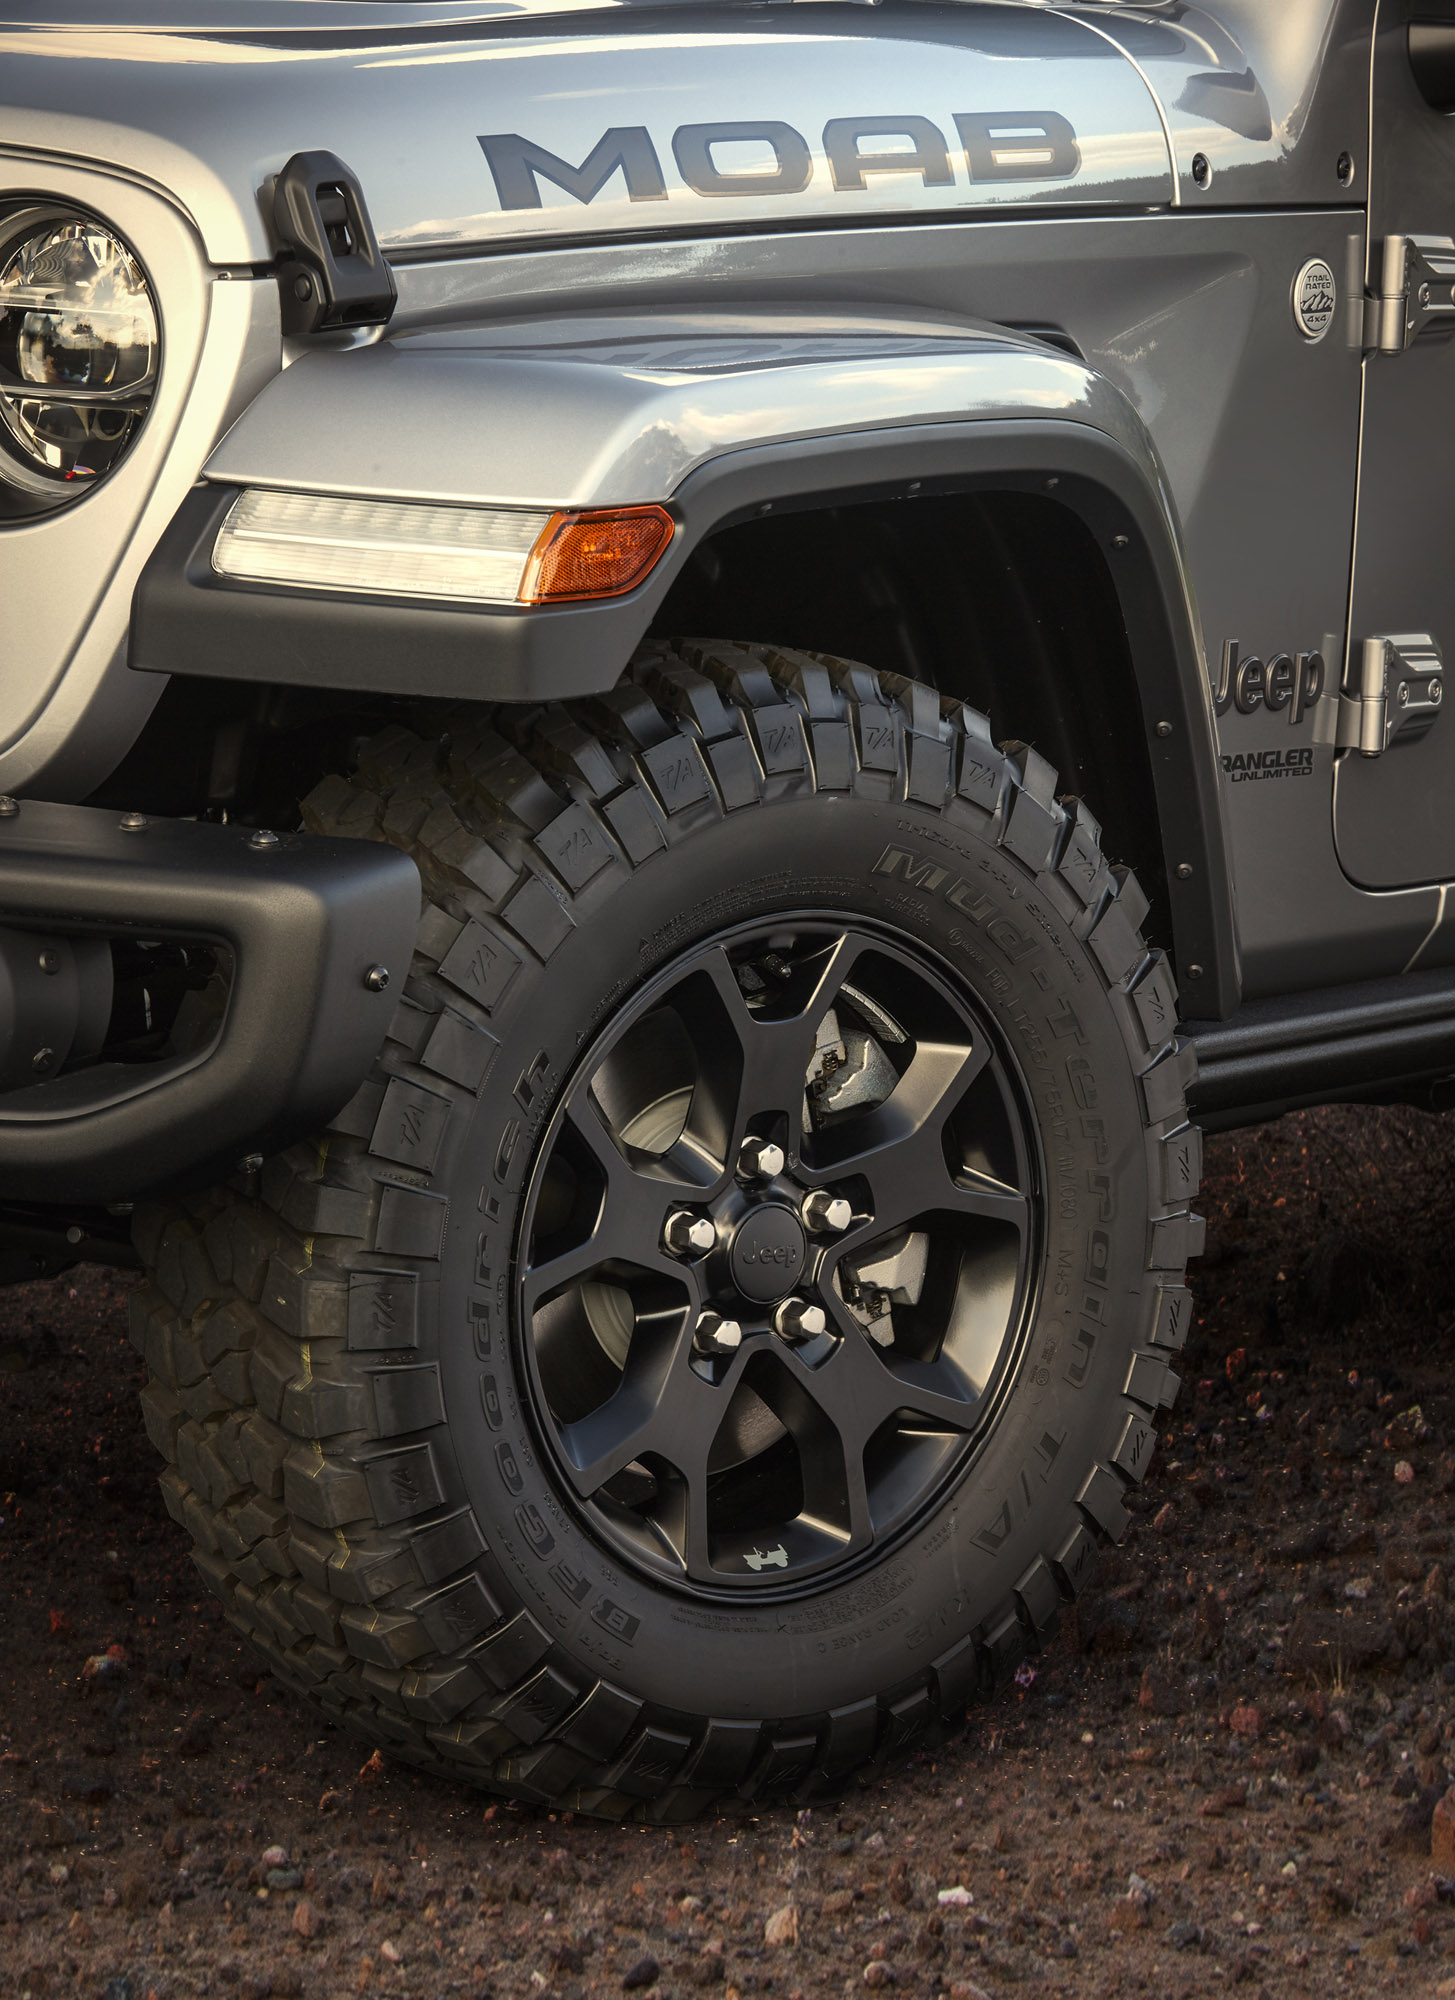 Jeep с гордостью представляет версию Wrangler Moab Edition, эксклюзивную модель, основанную на Wrangler Sahara.